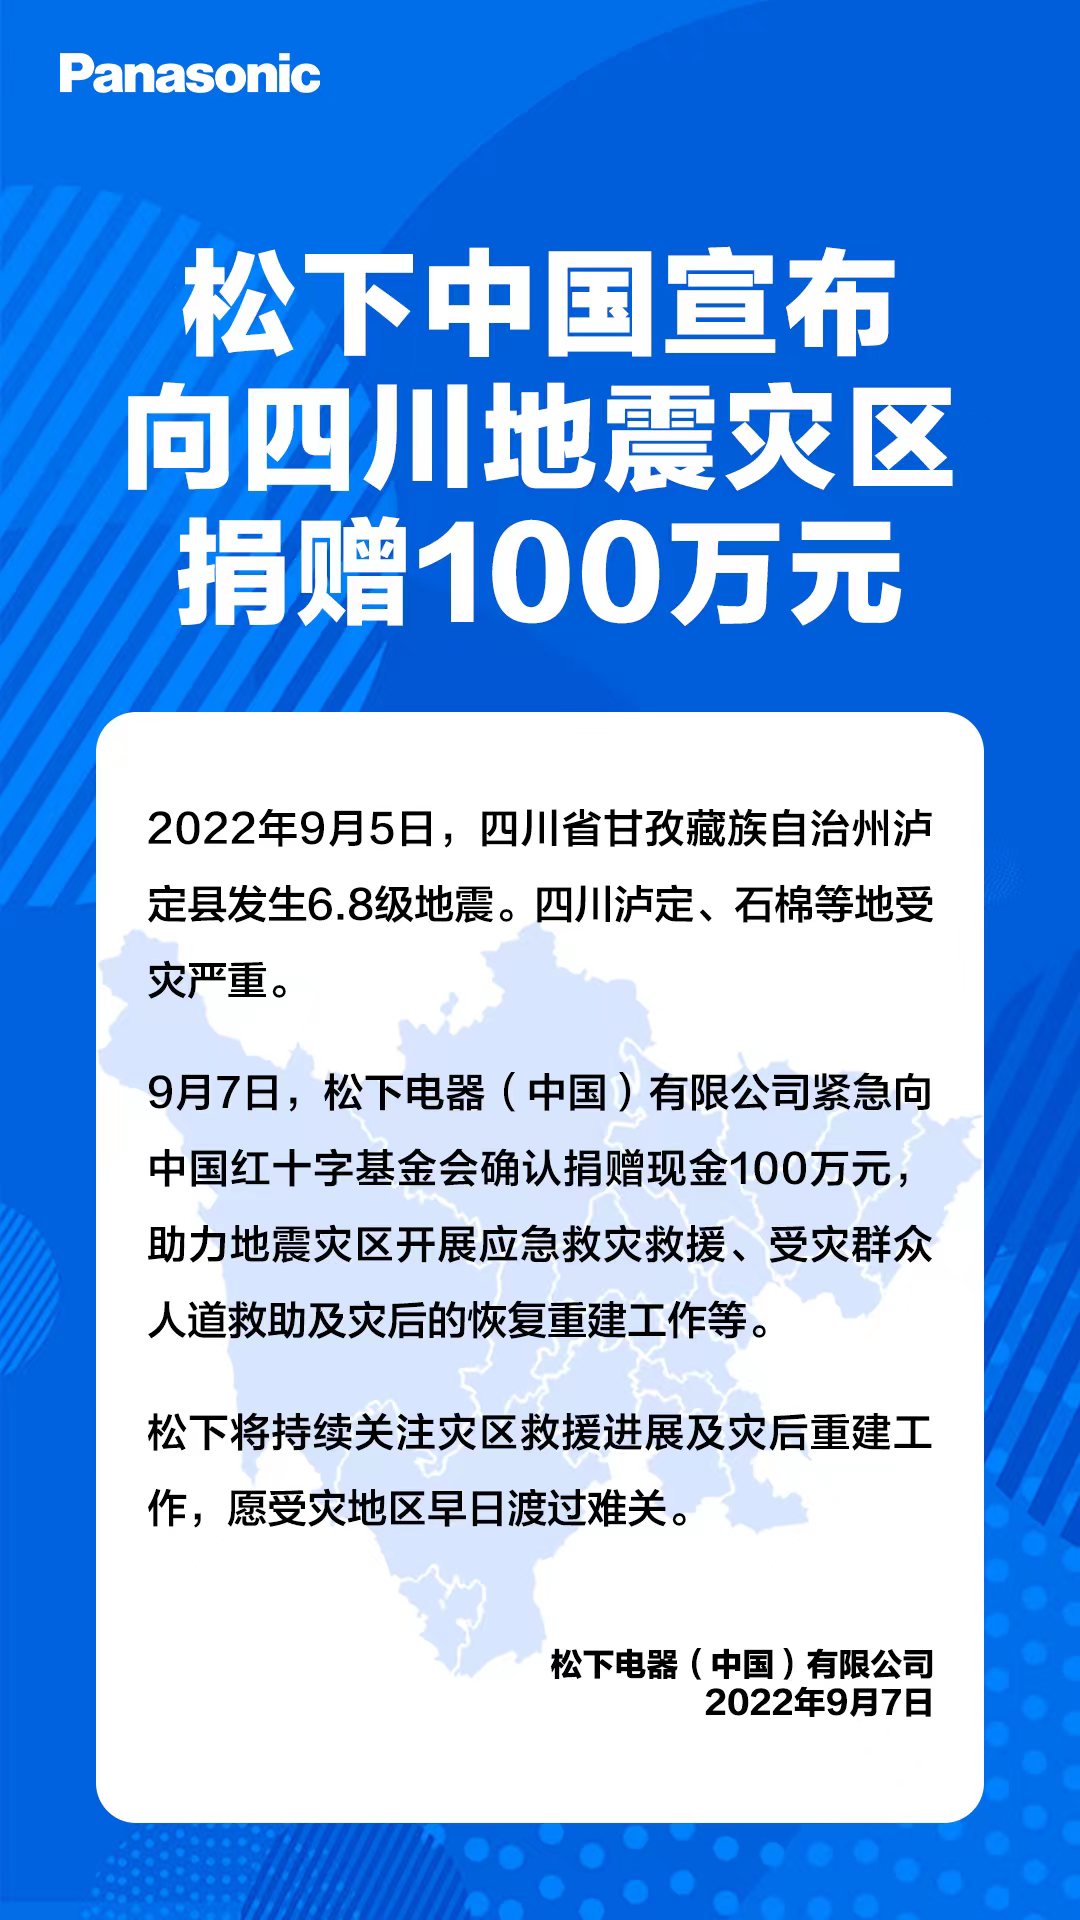 松下中國宣布向四川地震災區捐贈100萬元